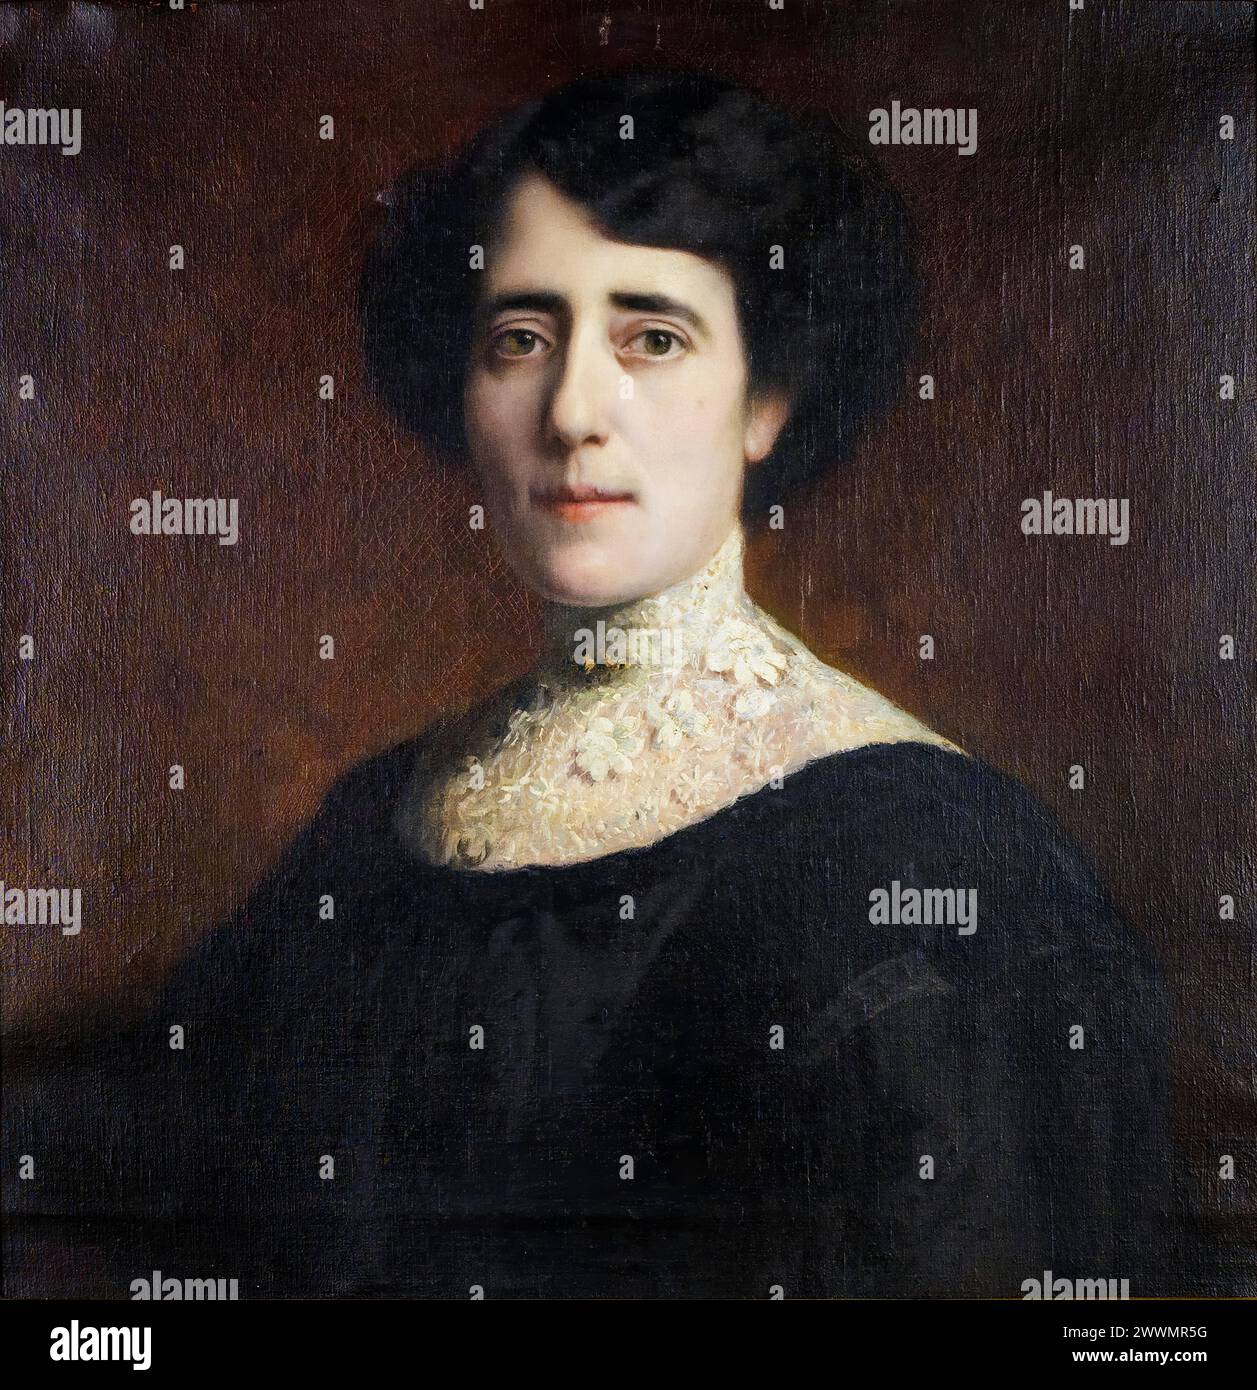 Franz von Stuck, Portrait einer Dame mit Spitzenkragen (Portrait d'une dame au collier en dentelle), peinture à l'huile sur toile, 1928 Banque D'Images